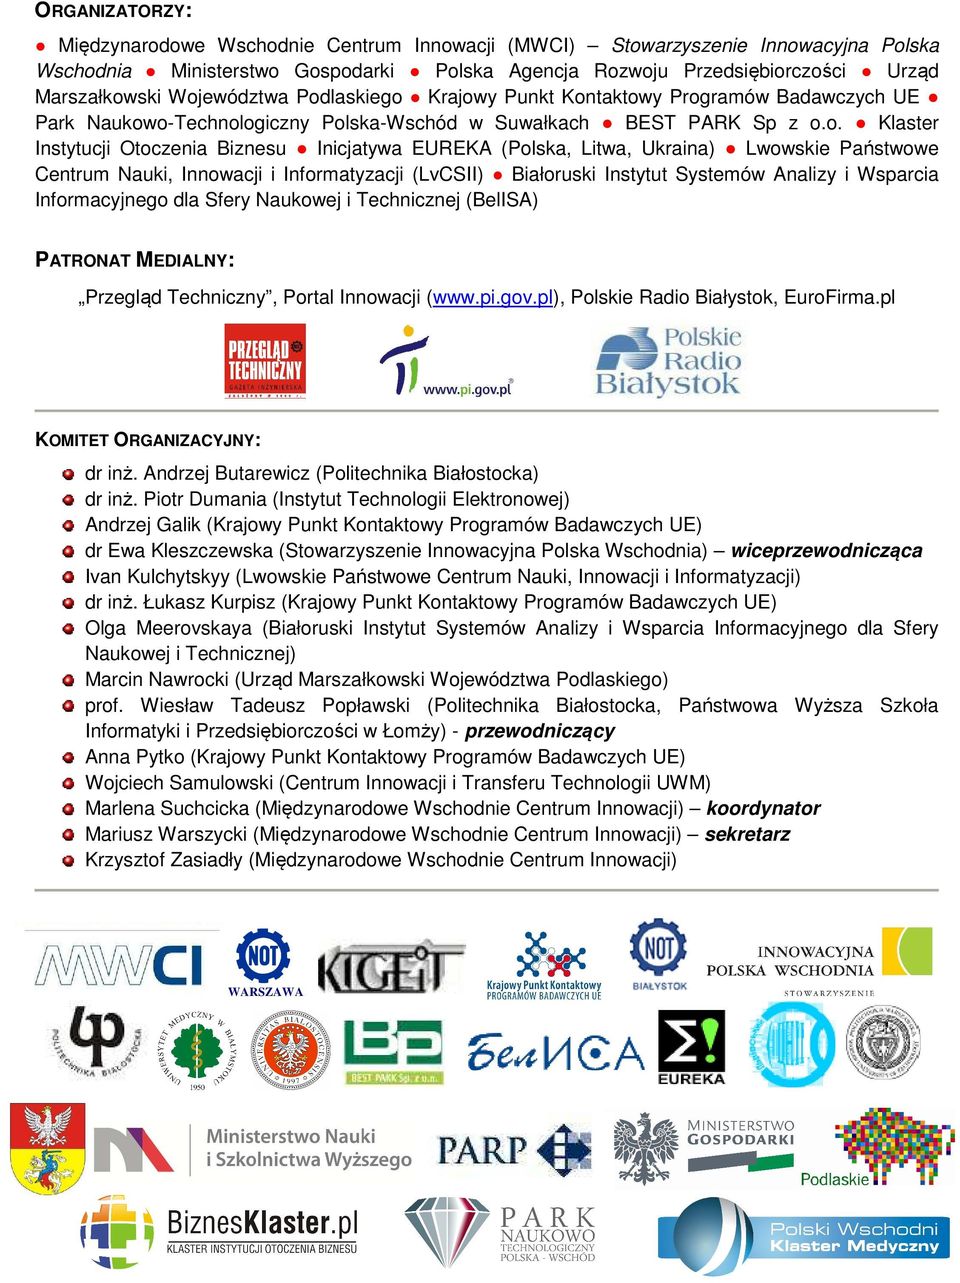 EUREKA (Polska, Litwa, Ukraina) Lwowskie Państwowe Centrum Nauki, Innowacji i Informatyzacji (LvCSII) Białoruski Instytut Systemów Analizy i Wsparcia Informacyjnego dla Sfery Naukowej i Technicznej